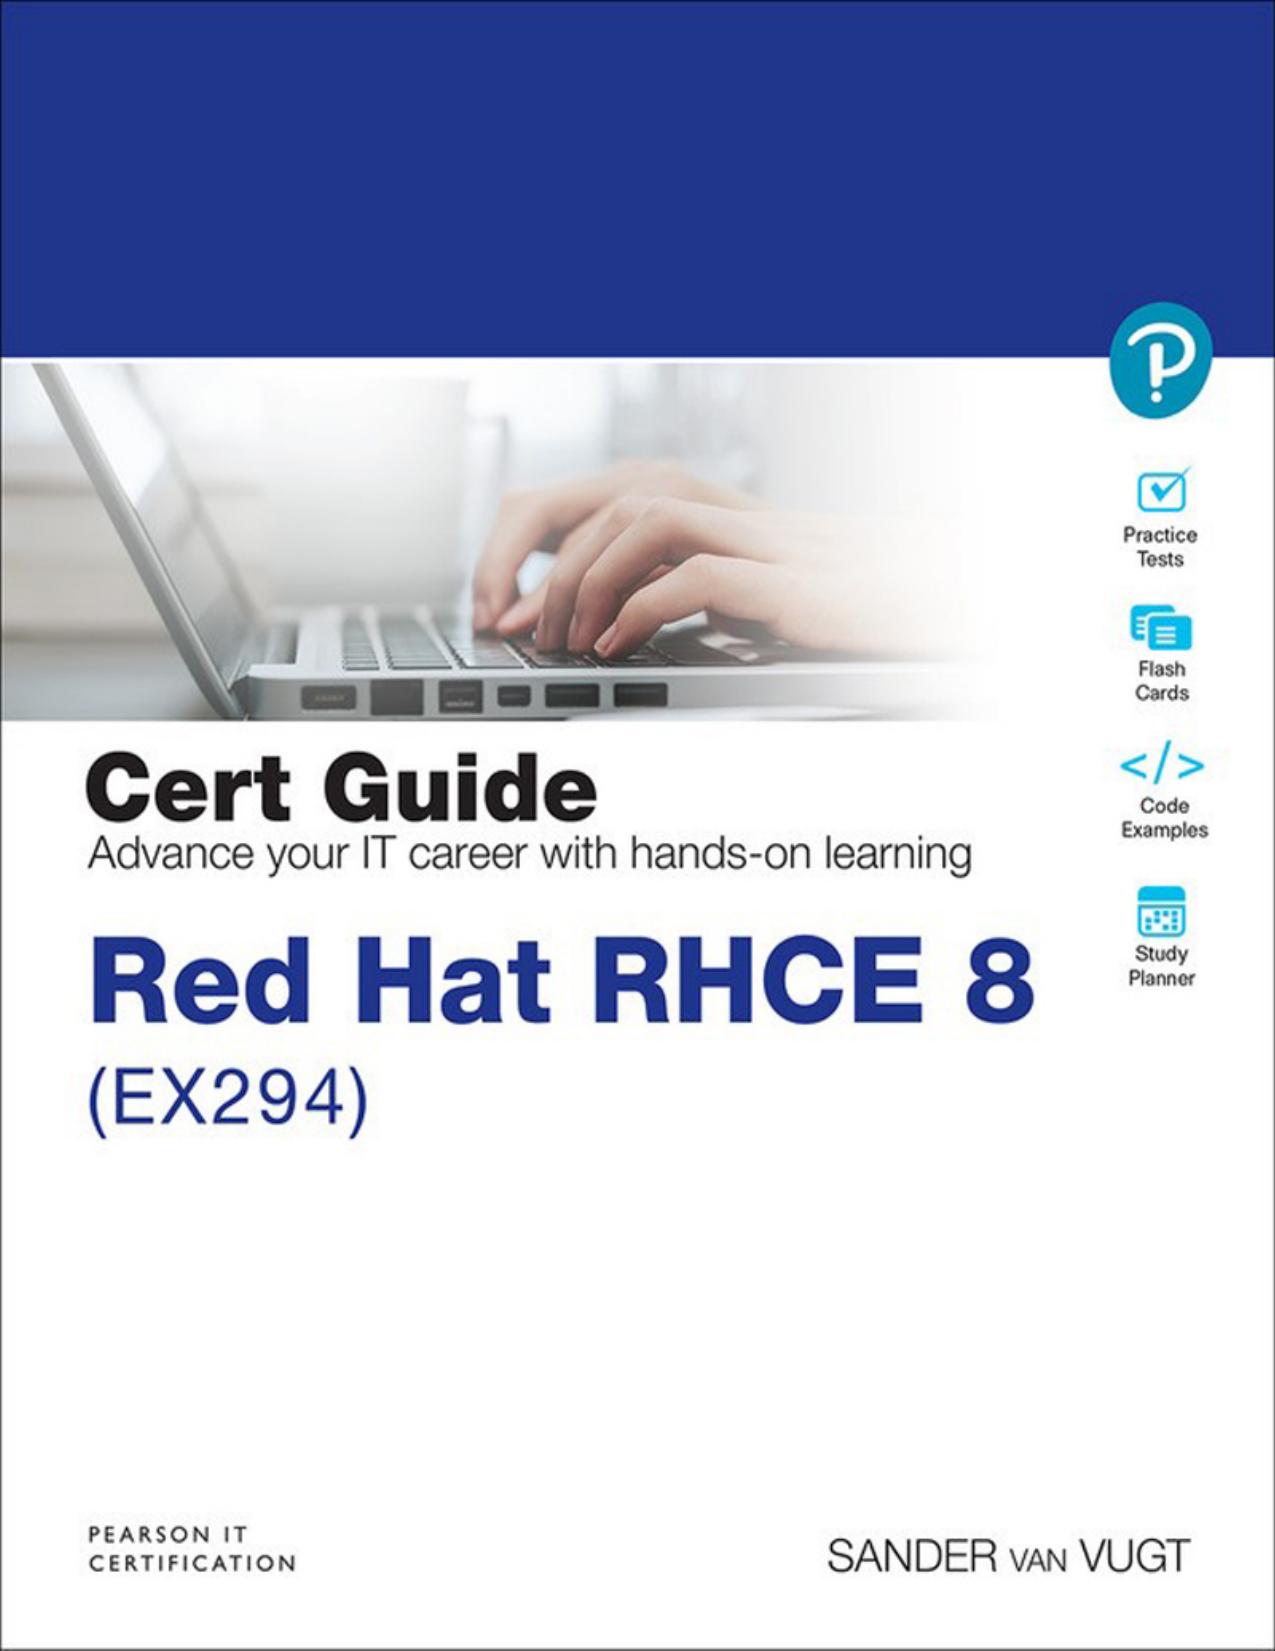 Red Hat RHCE 8 (EX294) Cert Guide by Sander van Vugt